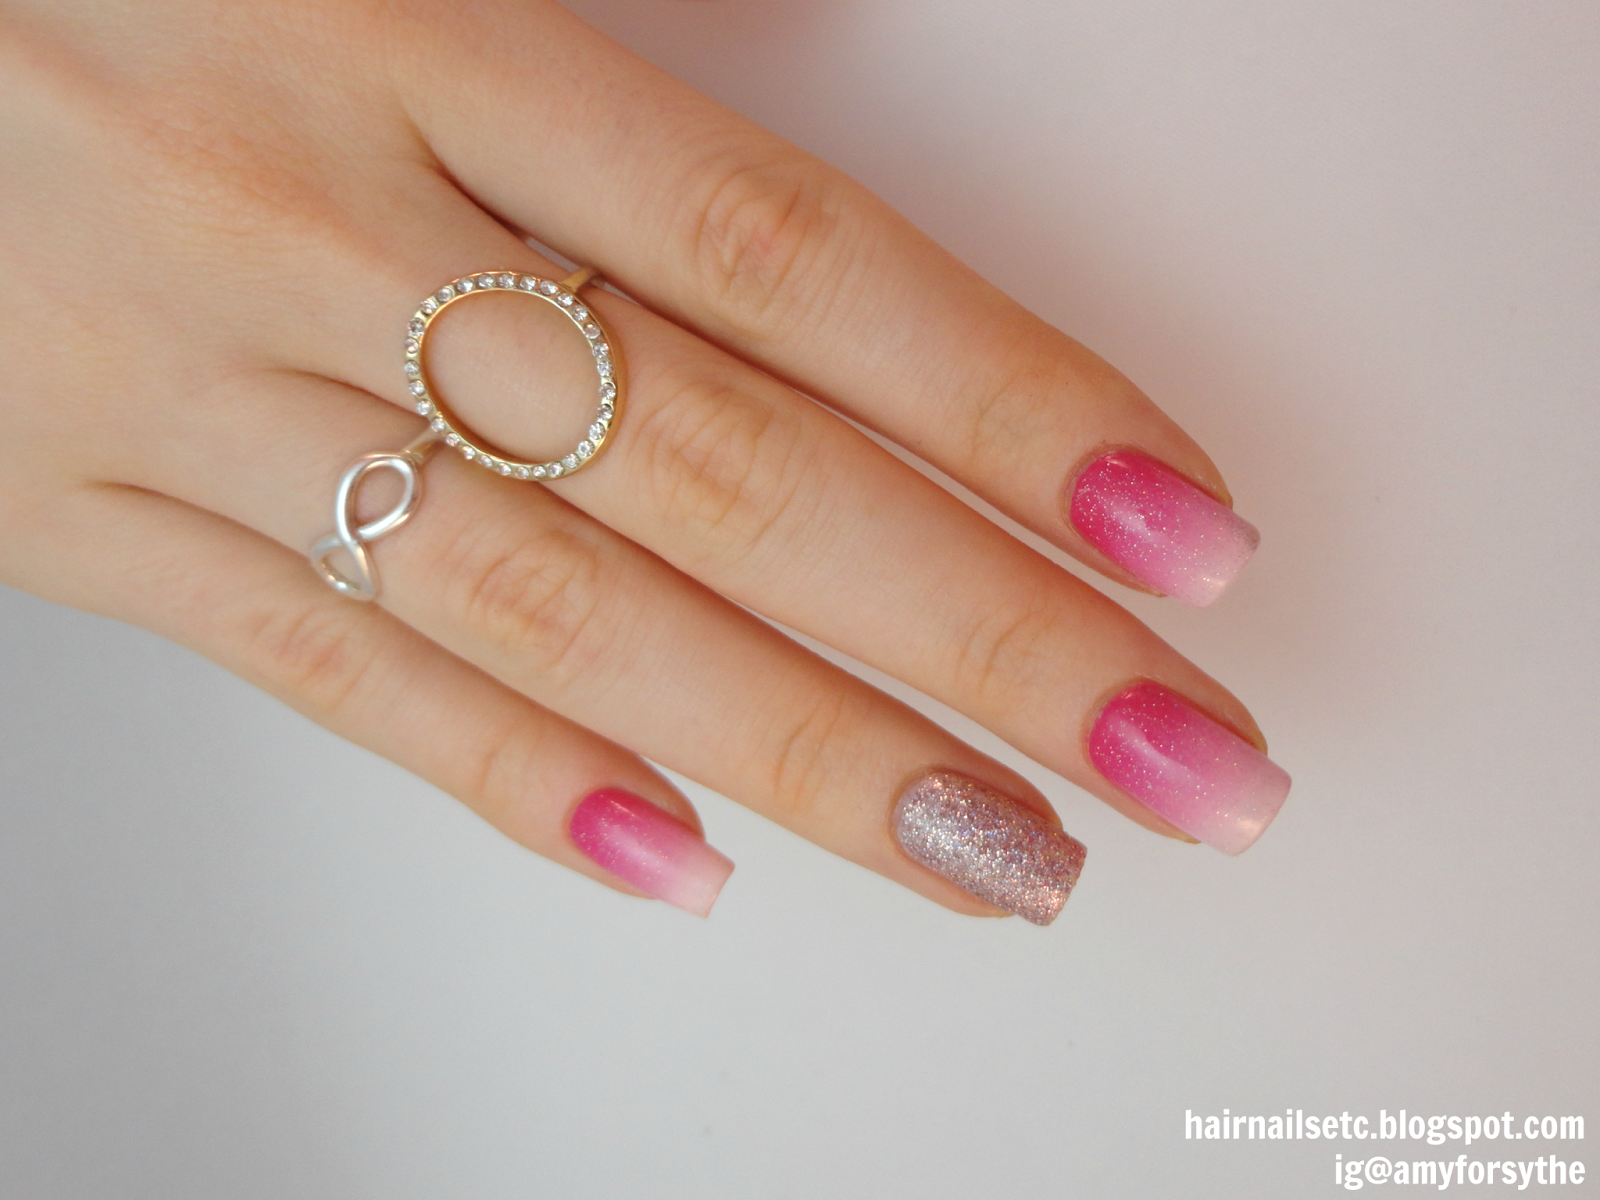 Pink Gradient Nail Art with Glitter - hairnailsetc.blogspot.co.uk / ig@amyforsythe